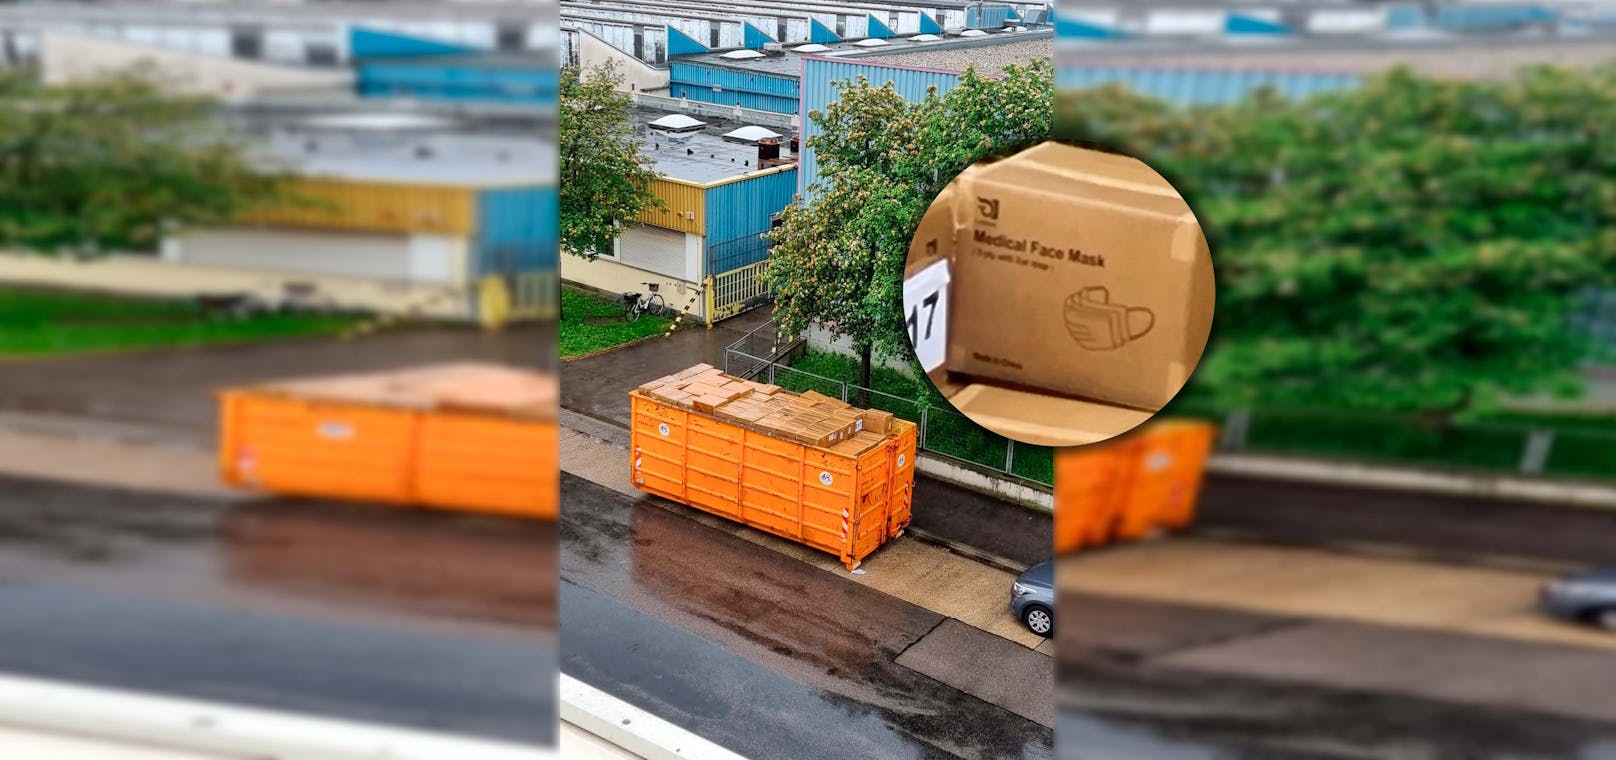 Ein <em>"Heute"</em>-Leserreporter sah einen riesigen Container mit unzähligen Kartons – der Inhalt: unverpackte FFP2-Masken.